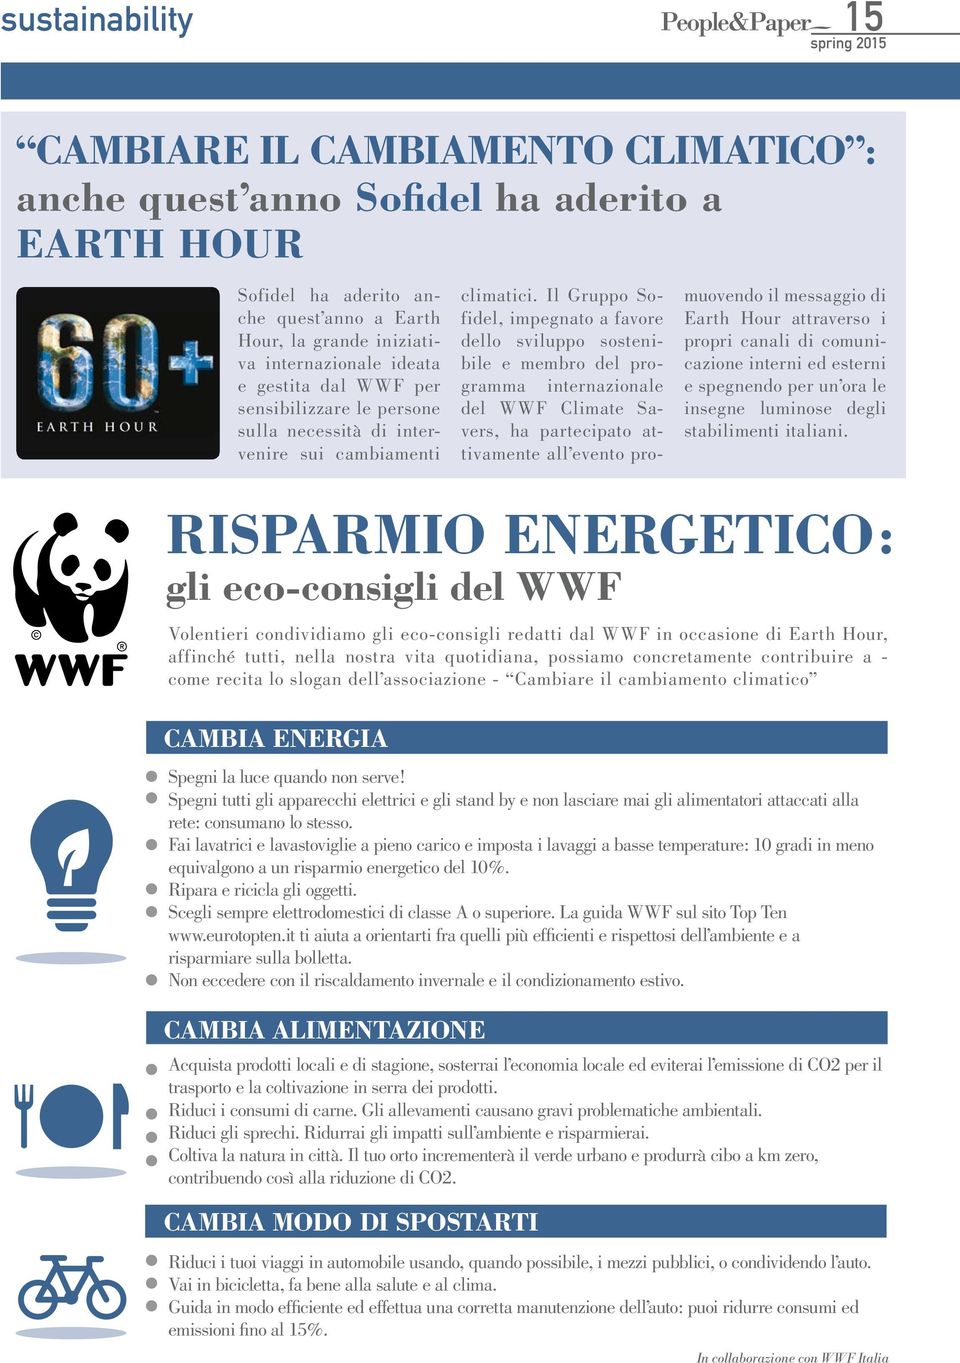 Il Gruppo Sofidel, impegnato a favore dello sviluppo sostenibile e membro del programma internazionale del WWF Climate Savers, ha partecipato attivamente all evento promuovendo il messaggio di Earth